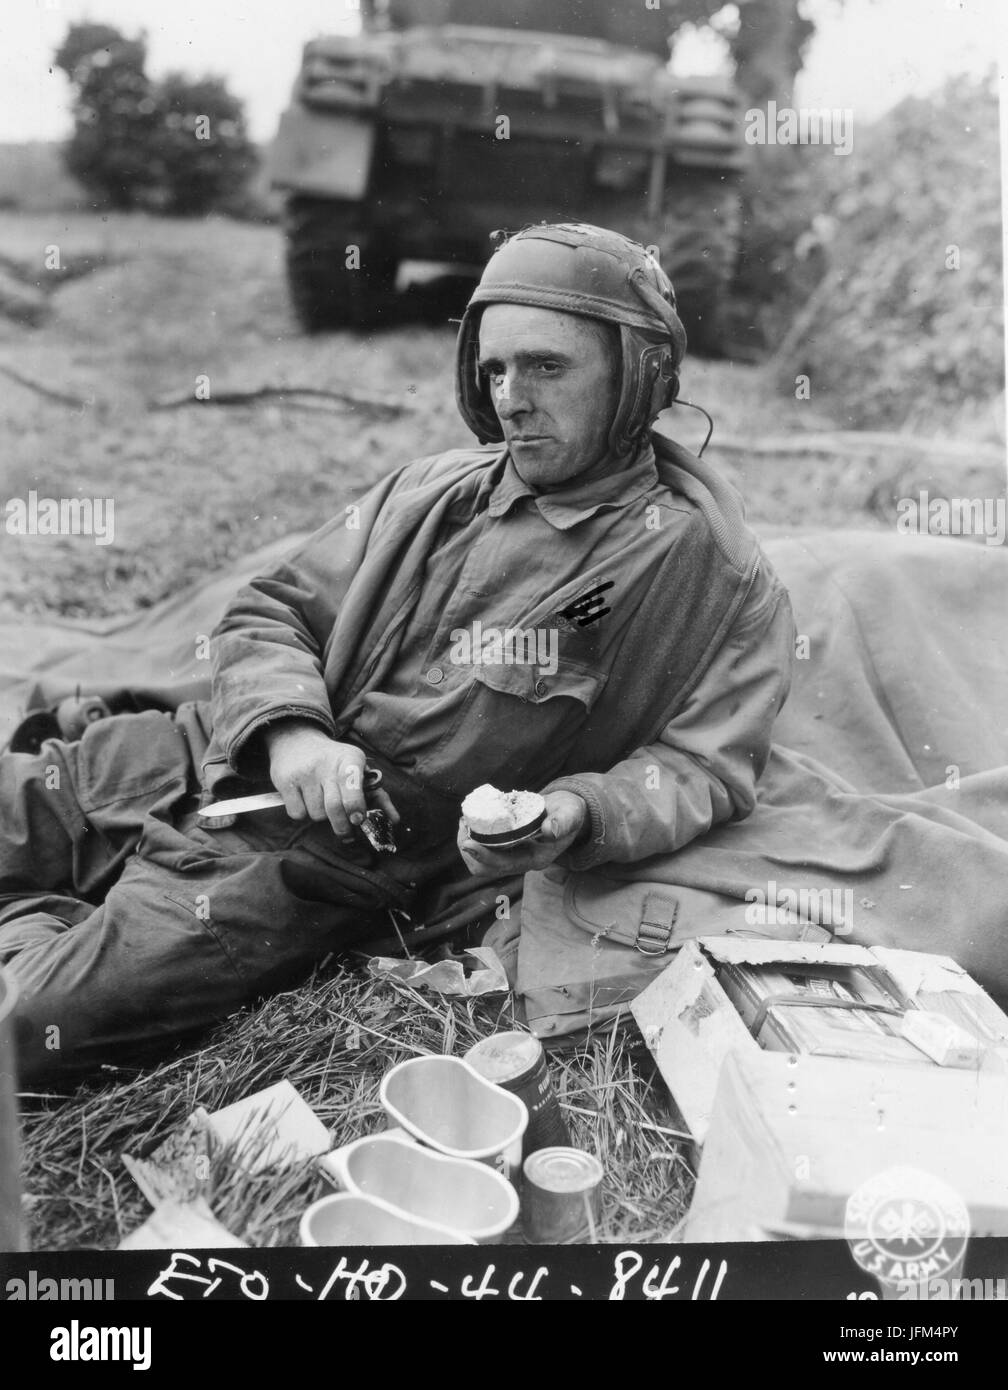 PFC Jerry C. Coleman, Assistent Fahrer eines Panzers befestigt, eine gepanzerte Einheit in Frankreich, nimmt sich Zeit, während einer Pause in der Aktion zu seinem K-Rationen zu essen. Juli 1944. Stockfoto